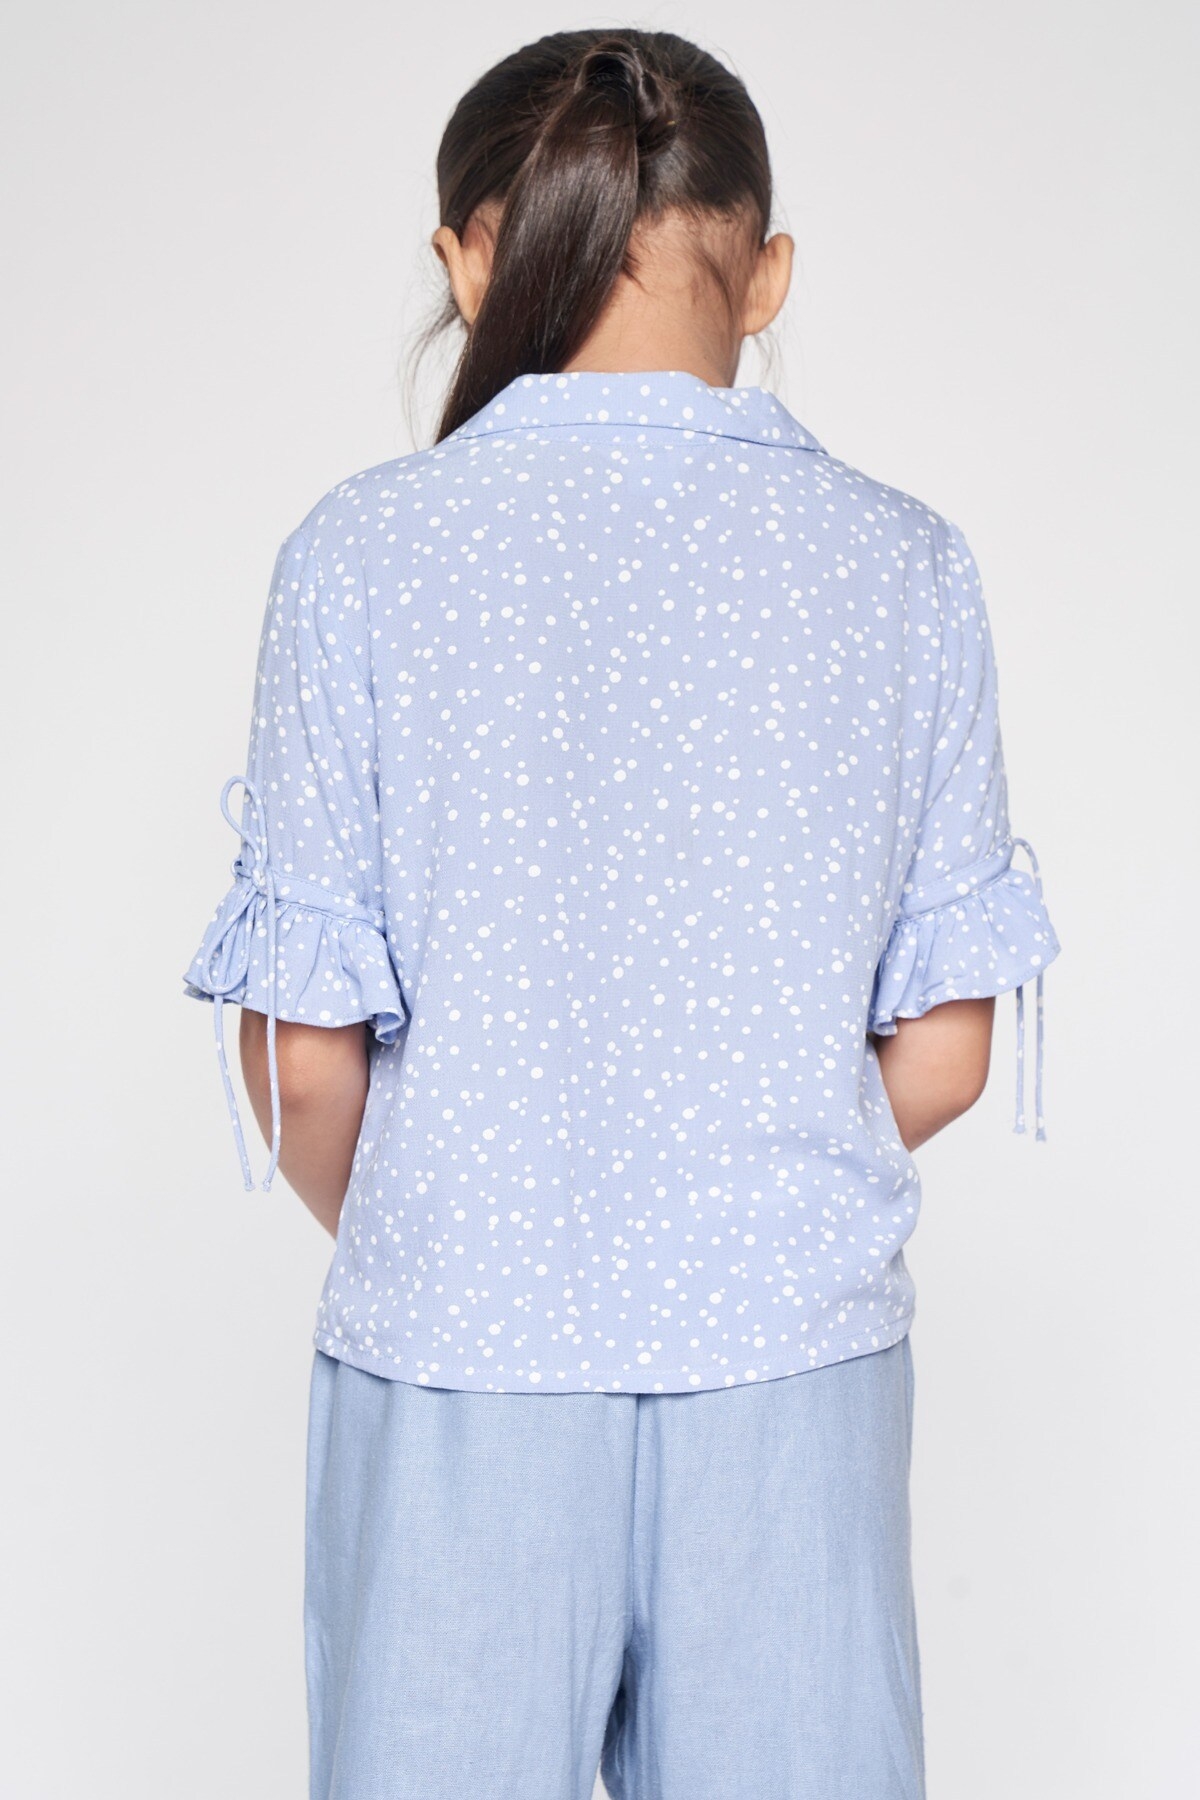 AND | Powder Blue Polka Dots Shirt Style Top 3